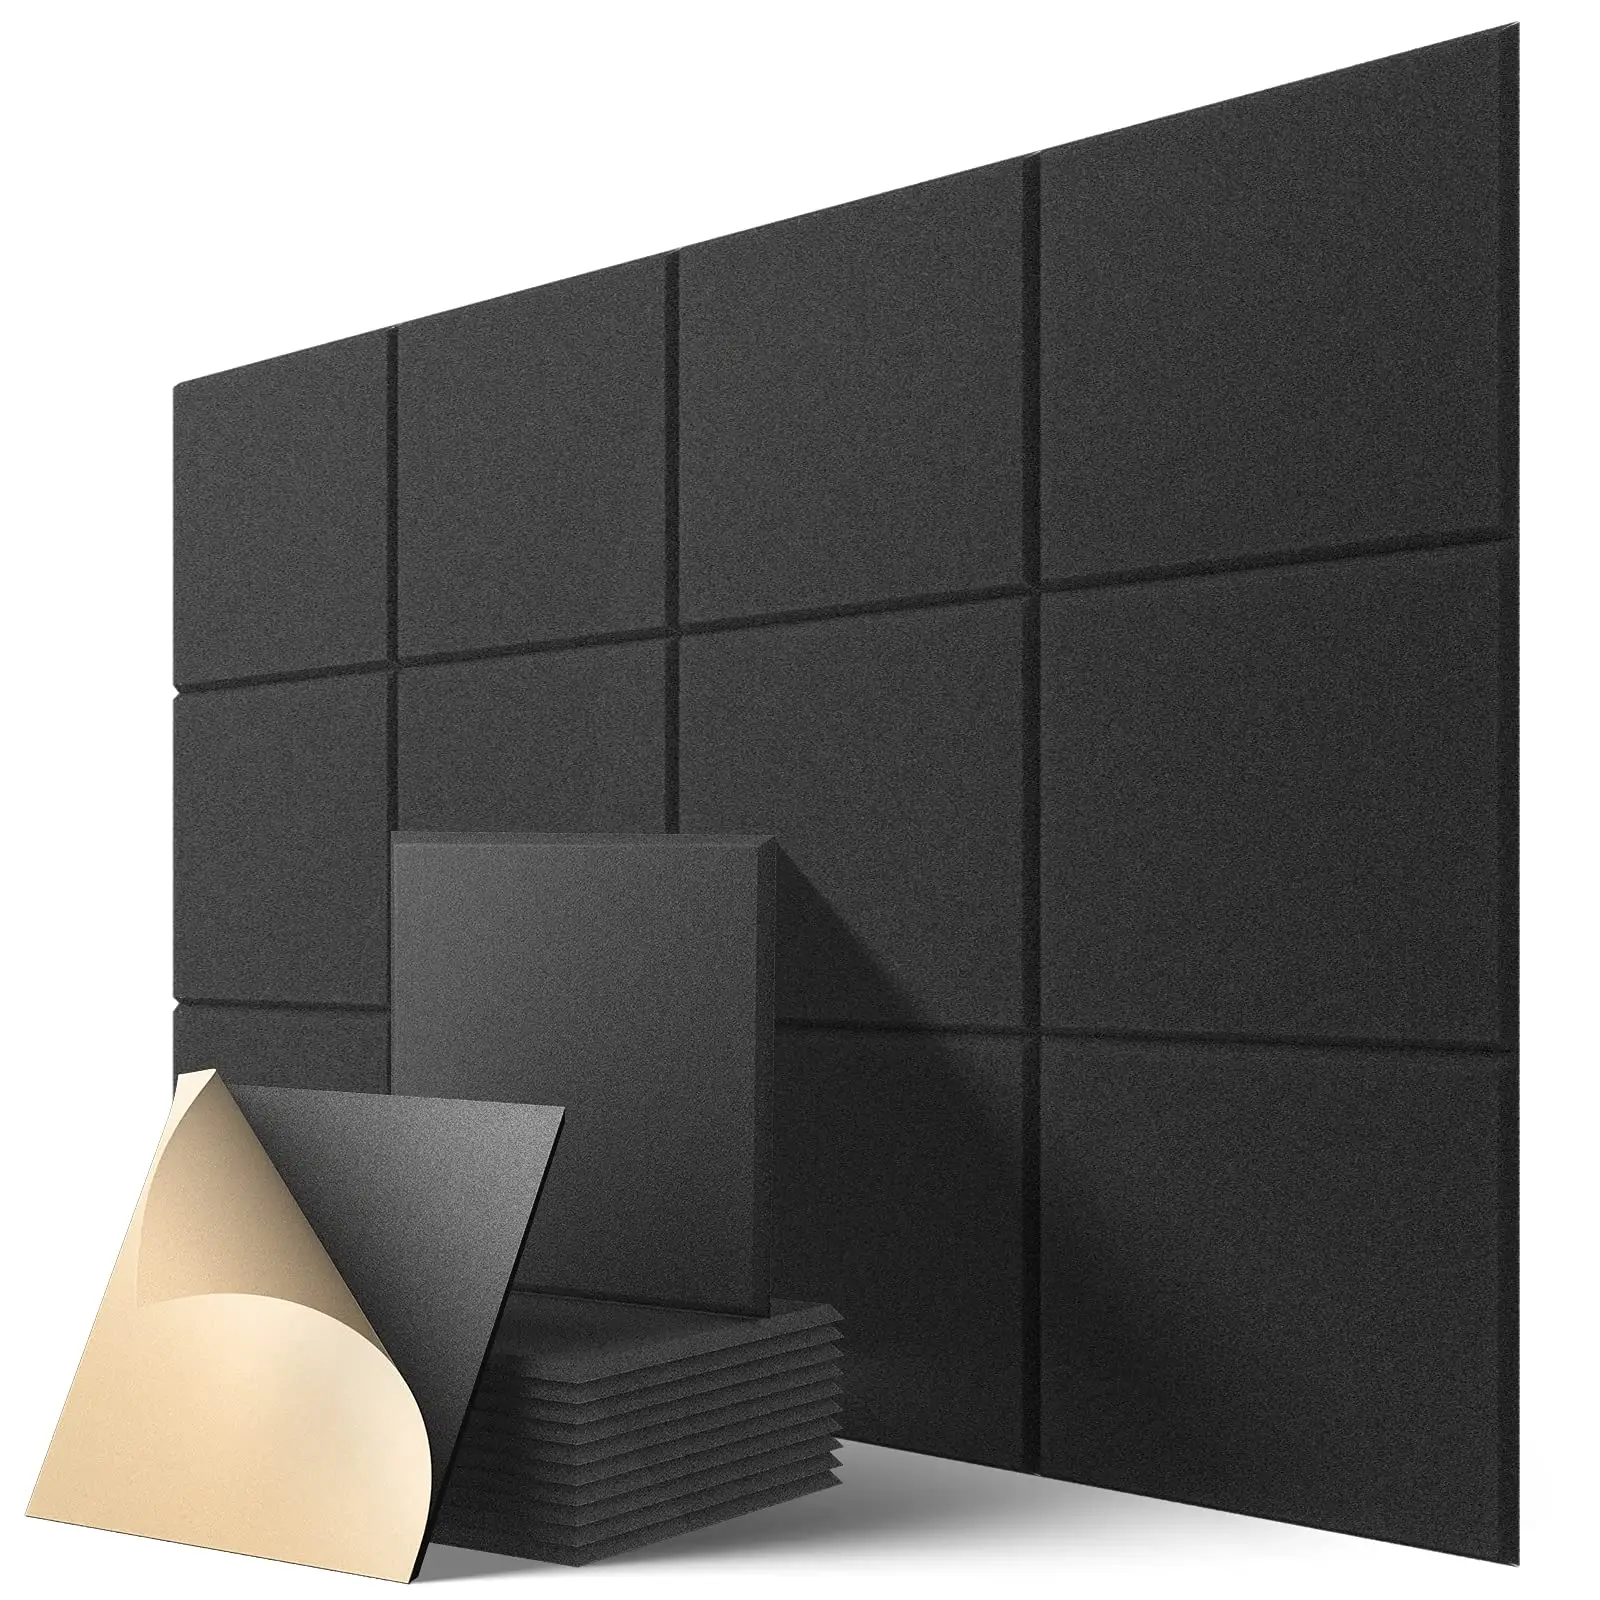 Tablero de pared acústico decorativo de fieltro PET a prueba de sonido Material absorbente de sonido Panel acústico ignífugo de poliéster 100%